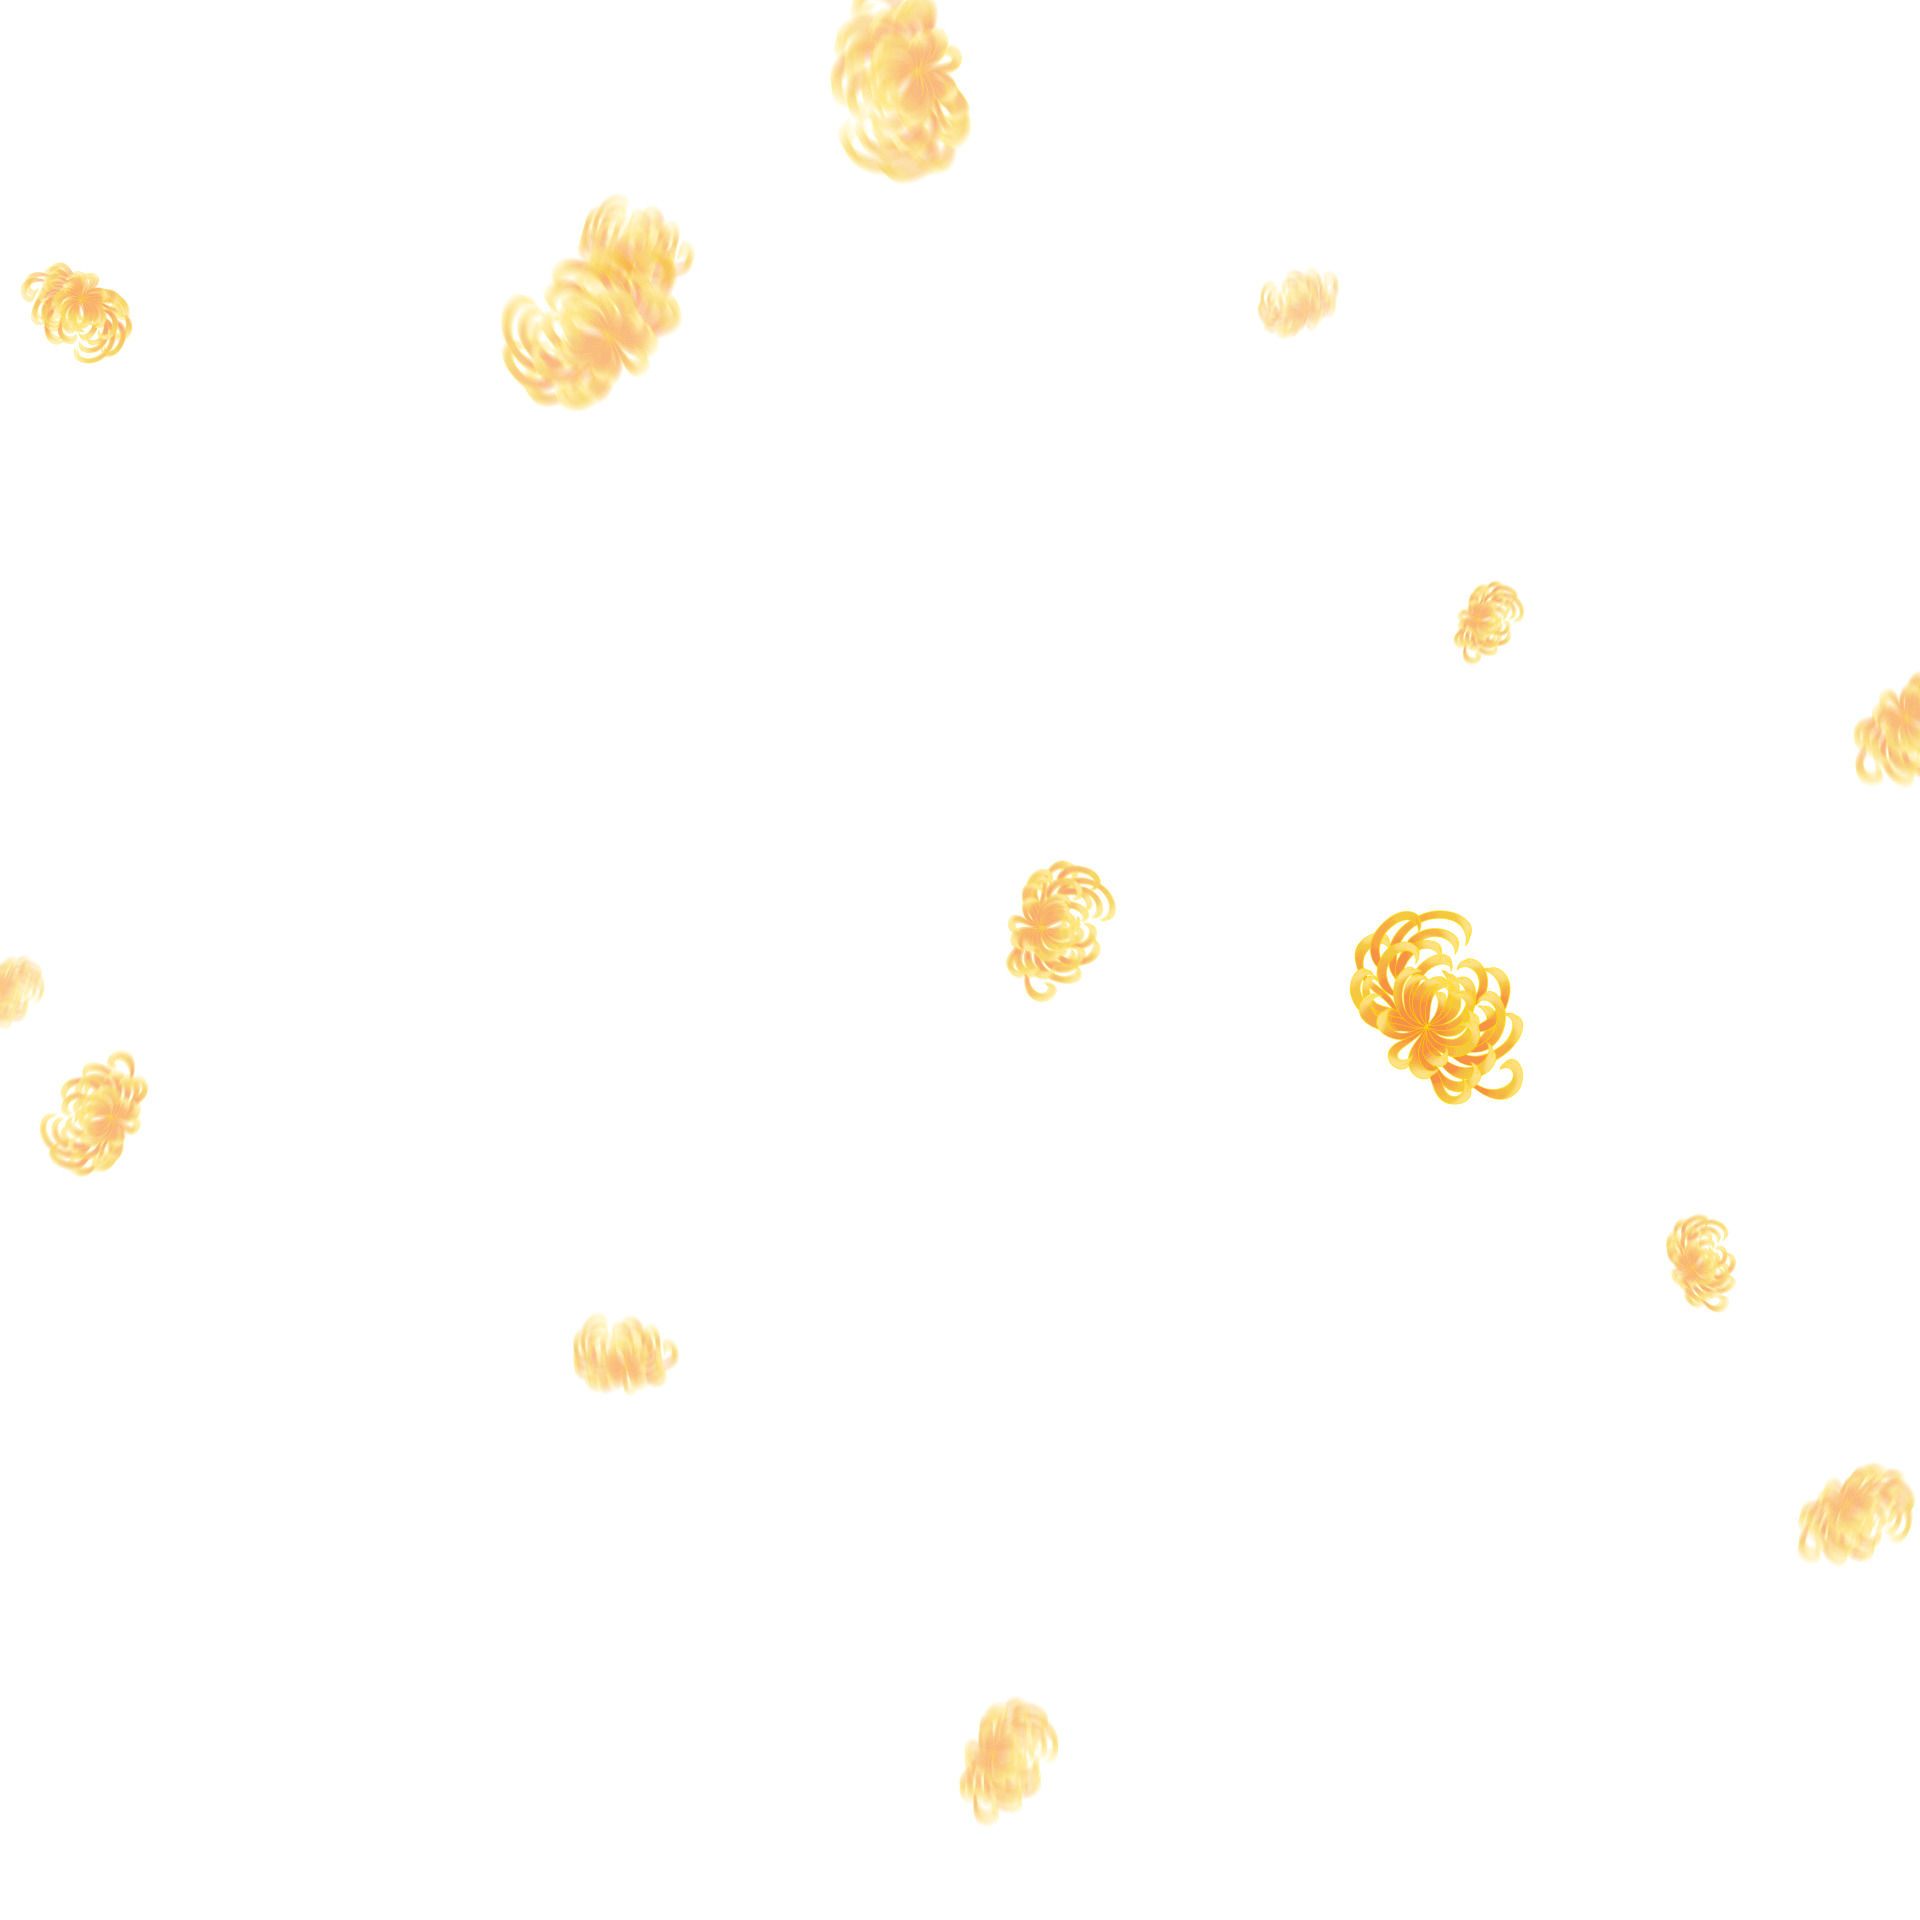 清明节重阳节黄色花朵植物菊花元素GIF动态图